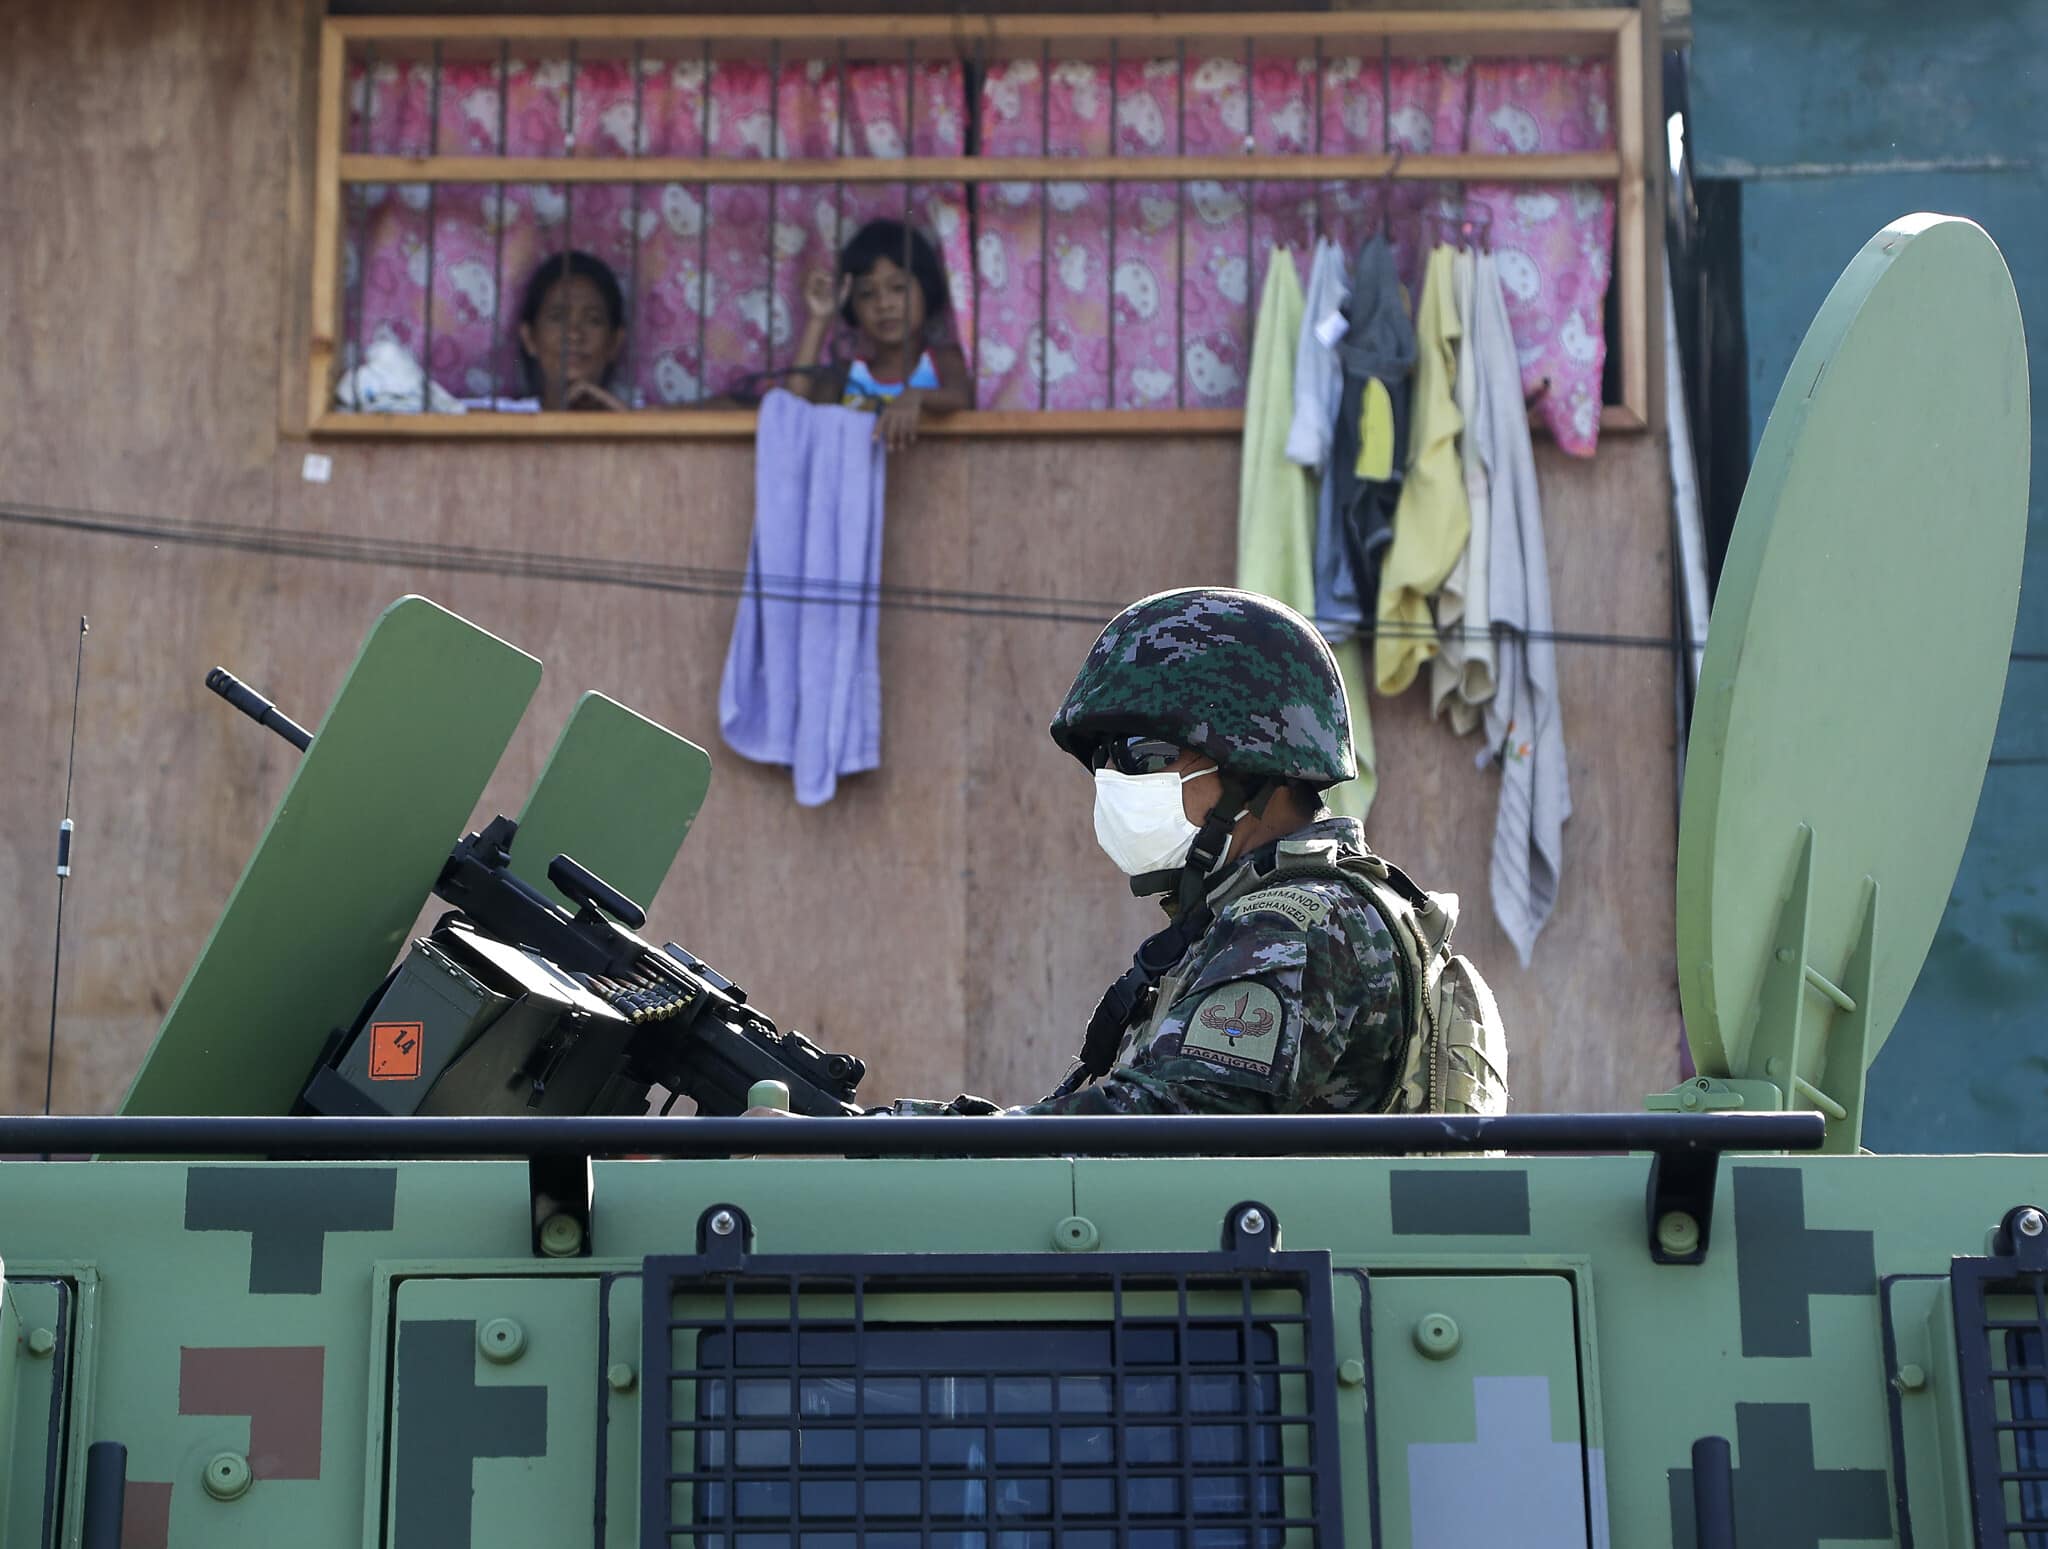 עידן הקורונה בפיליפינים (צילום: AP Photo/Aaron Favila)